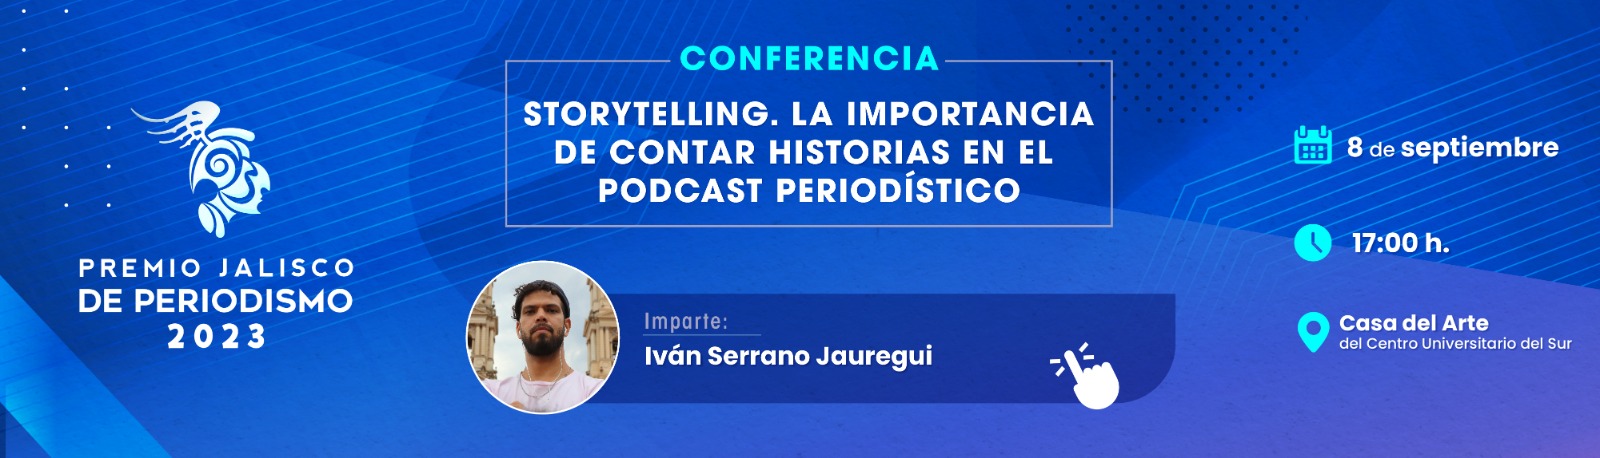 Conferencia: Storytelling. La importancia de contar historias en el podcast periodístico